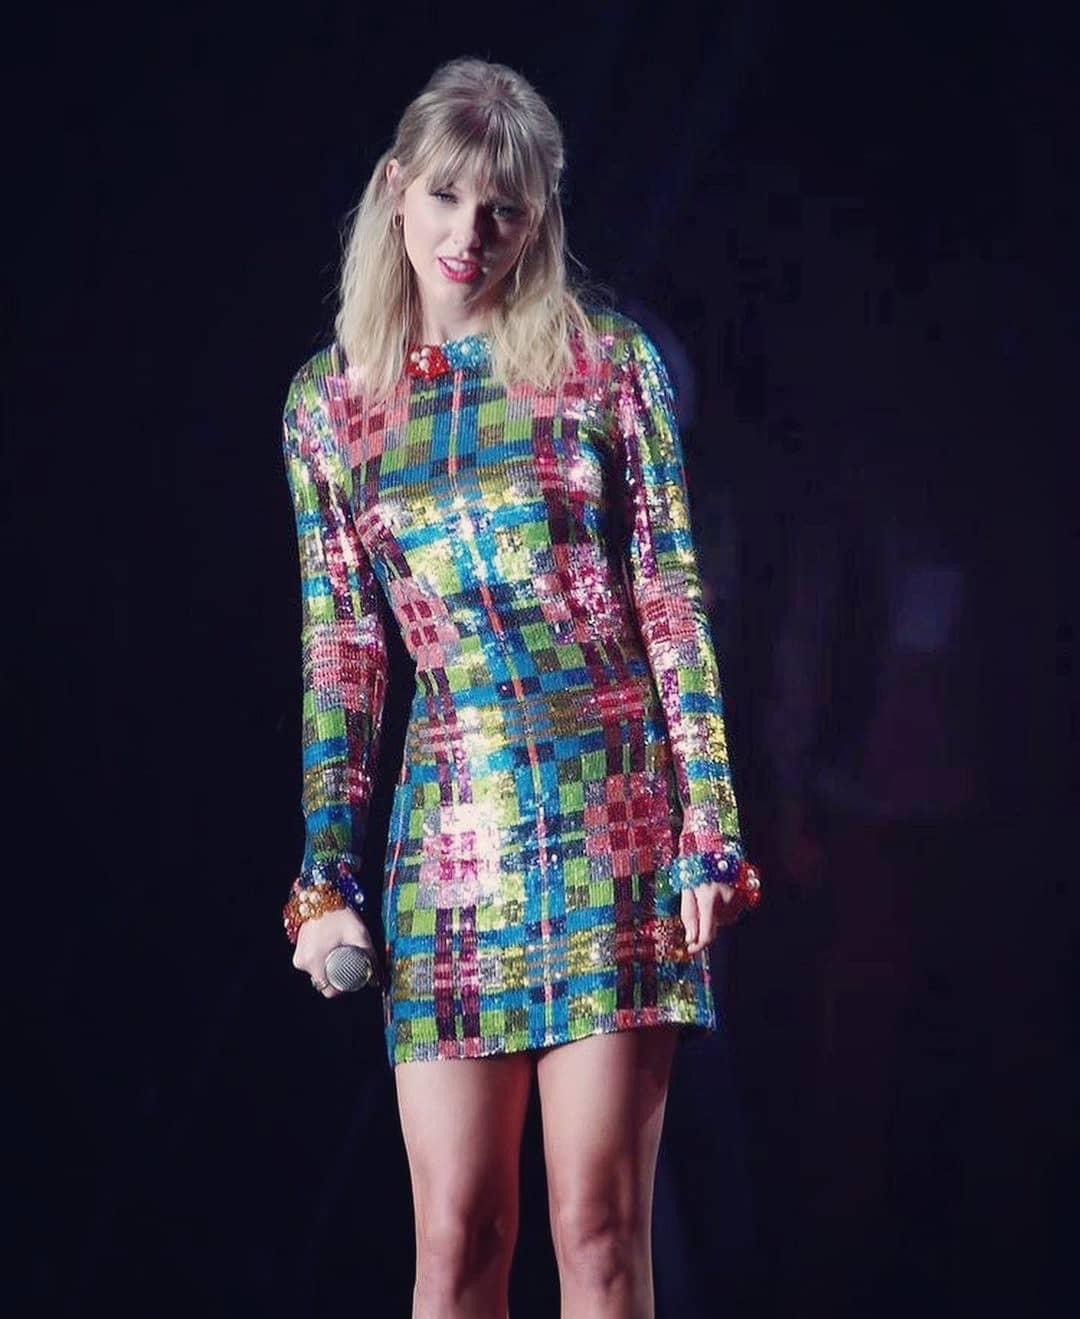 Taylor Swift dress Blank Meme Template